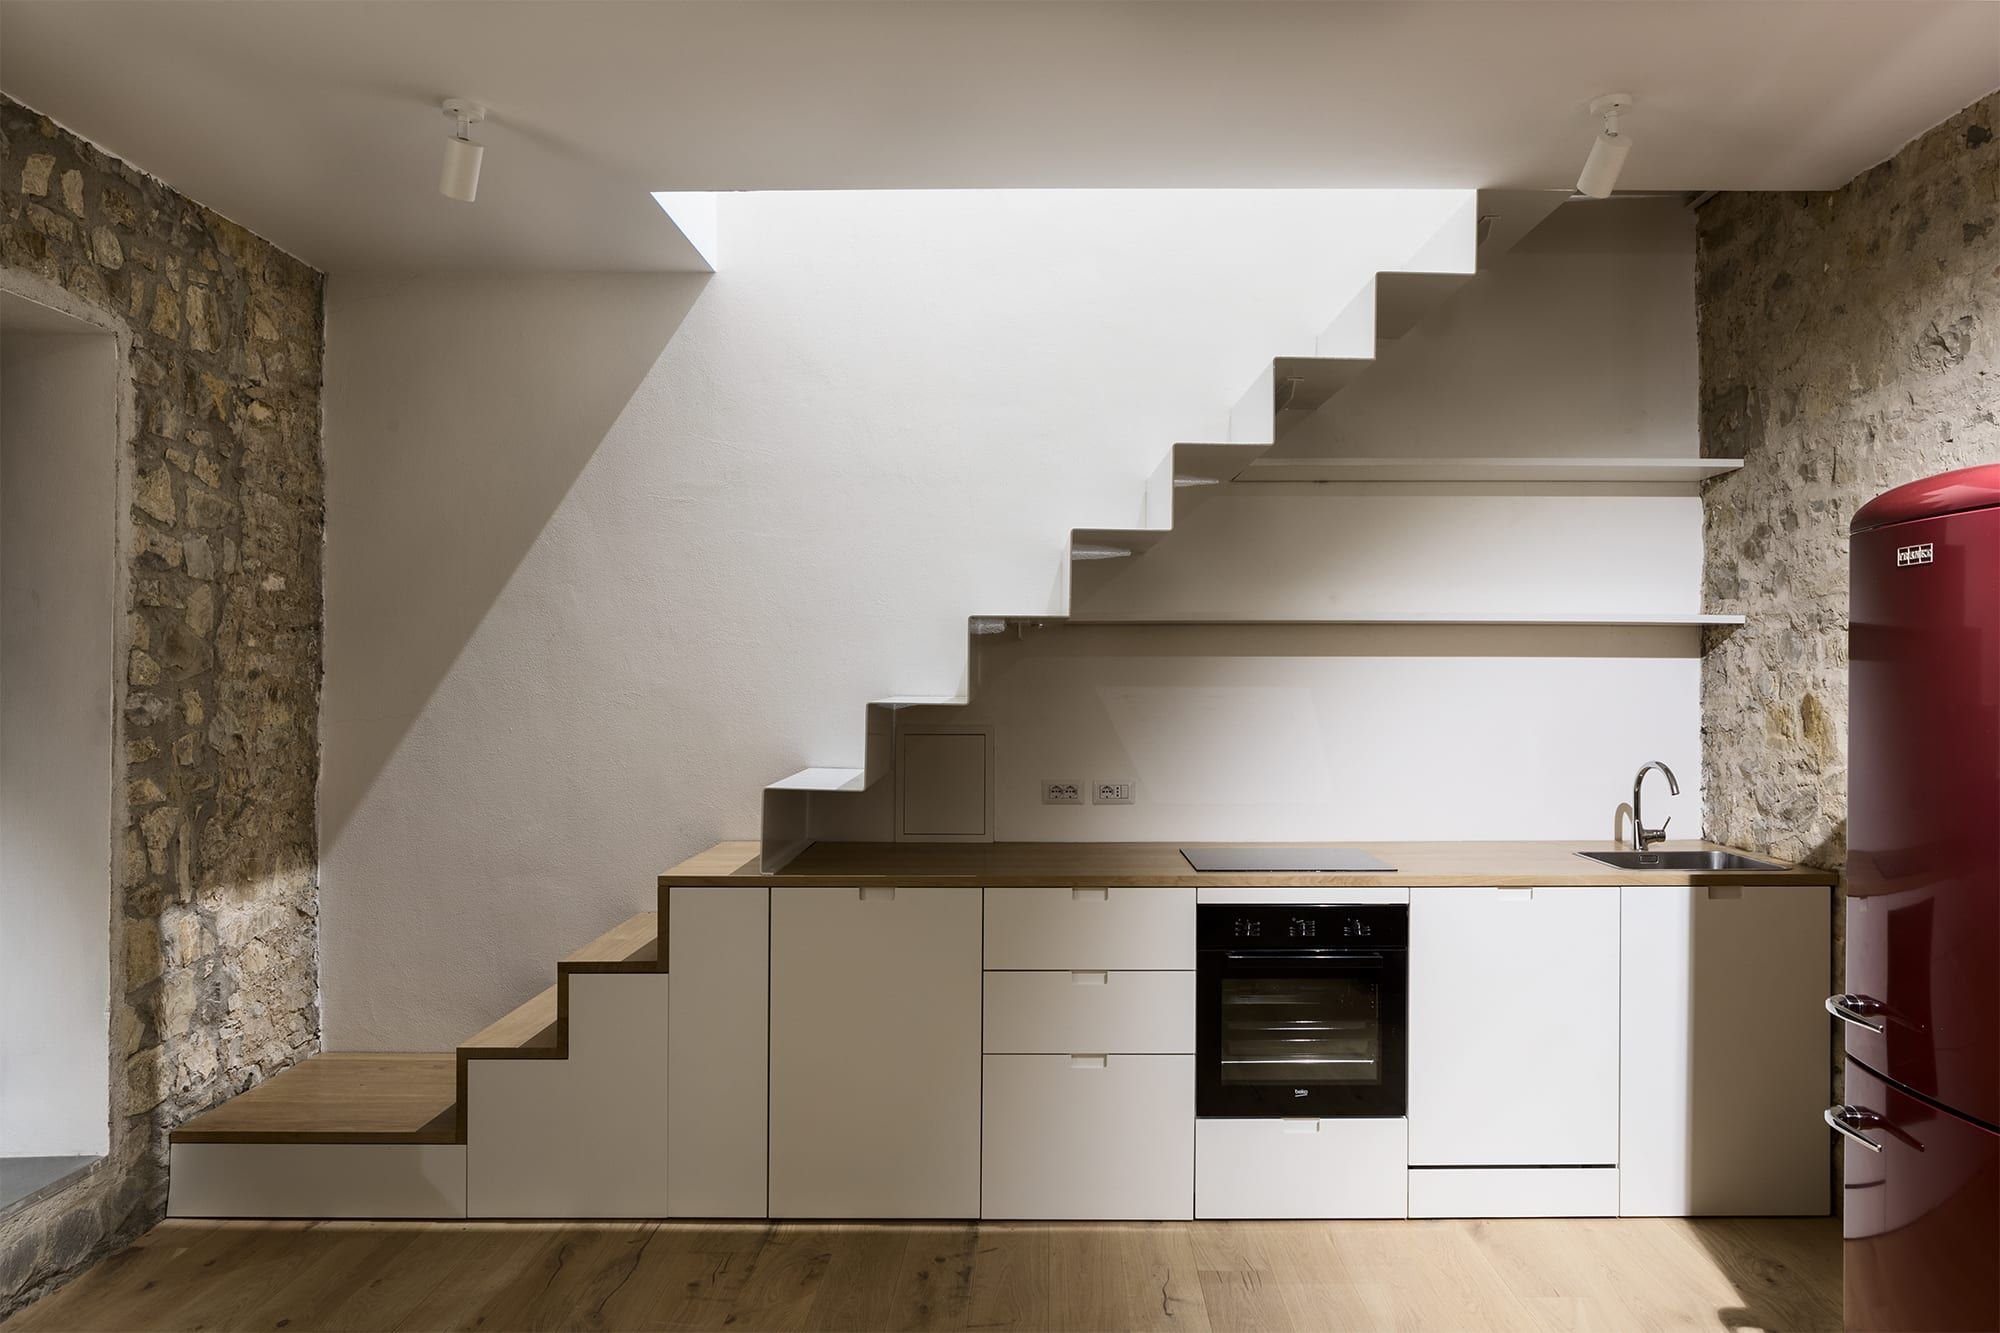 Второй этаж на кухне. Кухня под лестницей. Кухонный гарнитур под лестницей. Угловая кухня под лестницей. Кухня под лестницей на второй этаж.